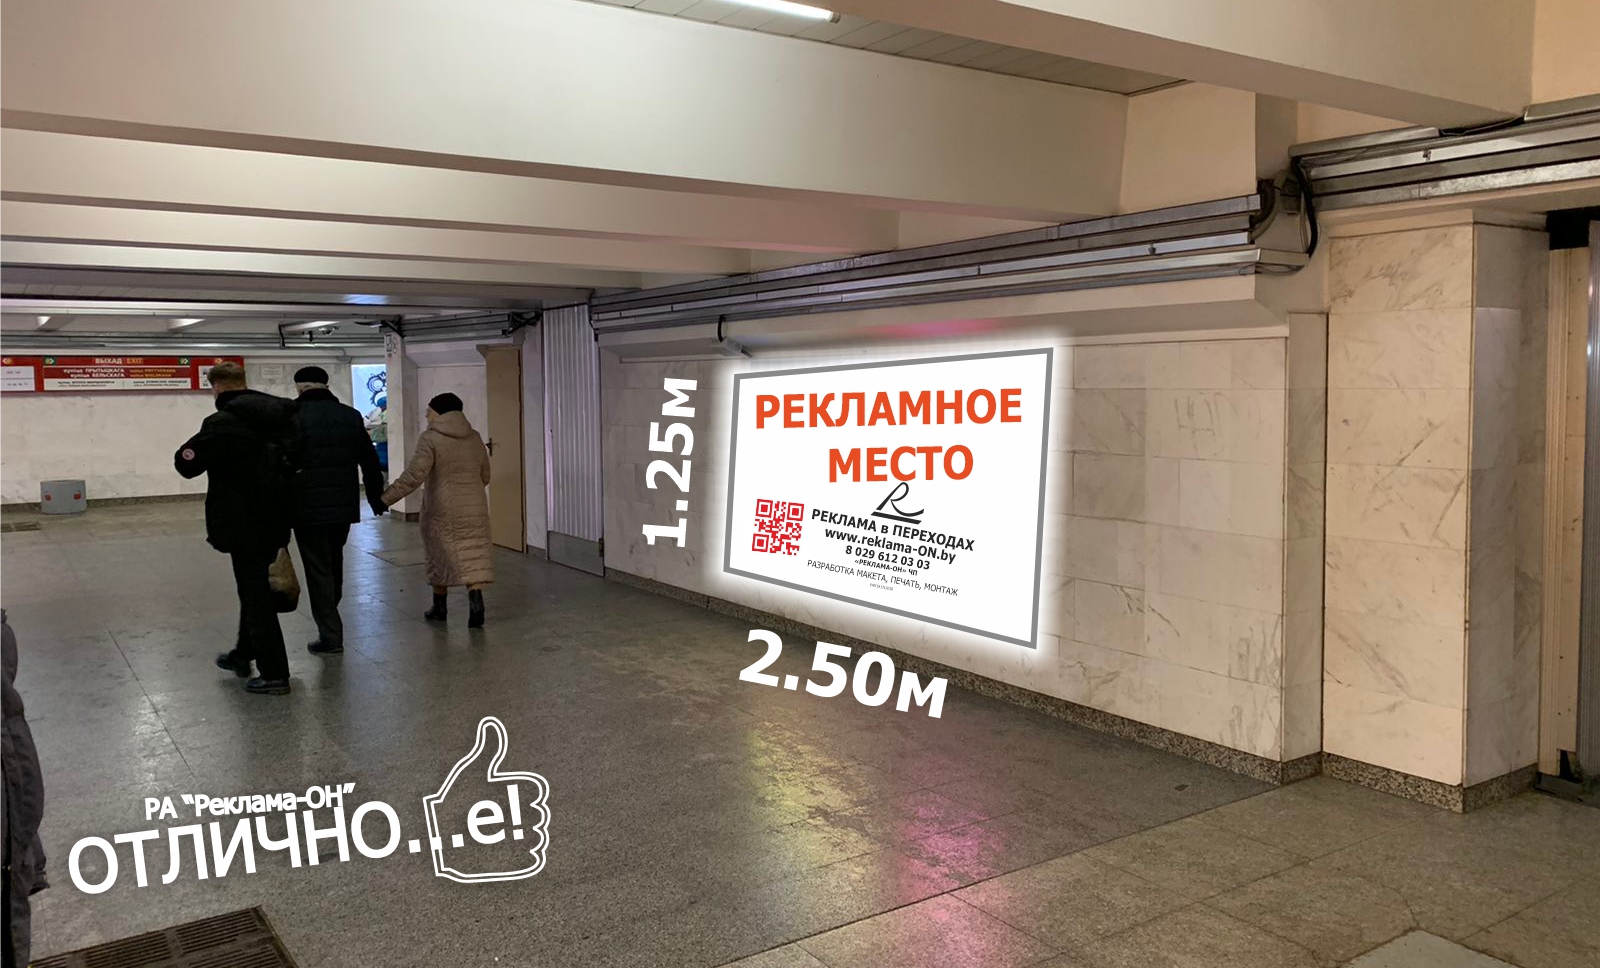 Ультраяркий световой лайтбокс на станции метро Спортивная (переход) reklama-on.by